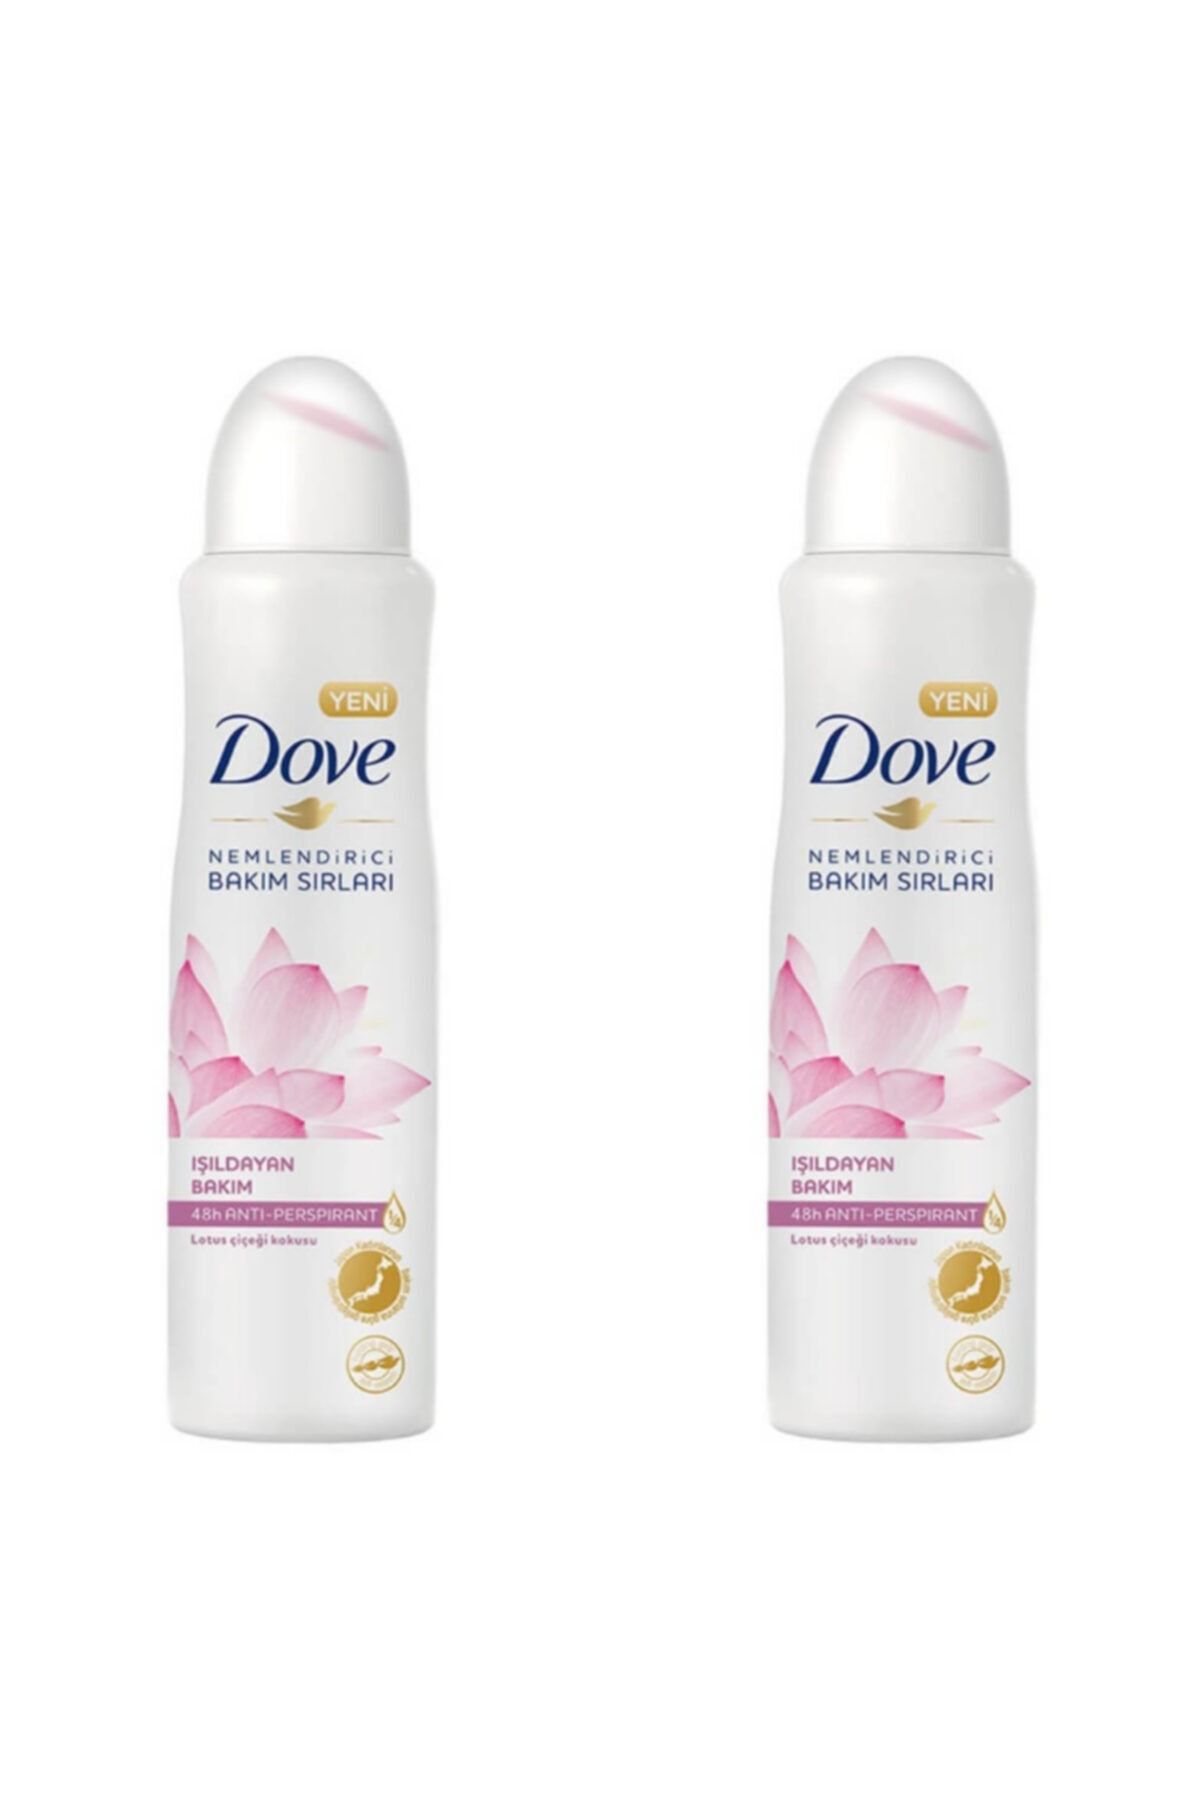 Dove Kadın Deodorant Işıldayan Bakım Lotus Çiçeği Kokusu 150 Ml - 2'li Avantaj Paketi